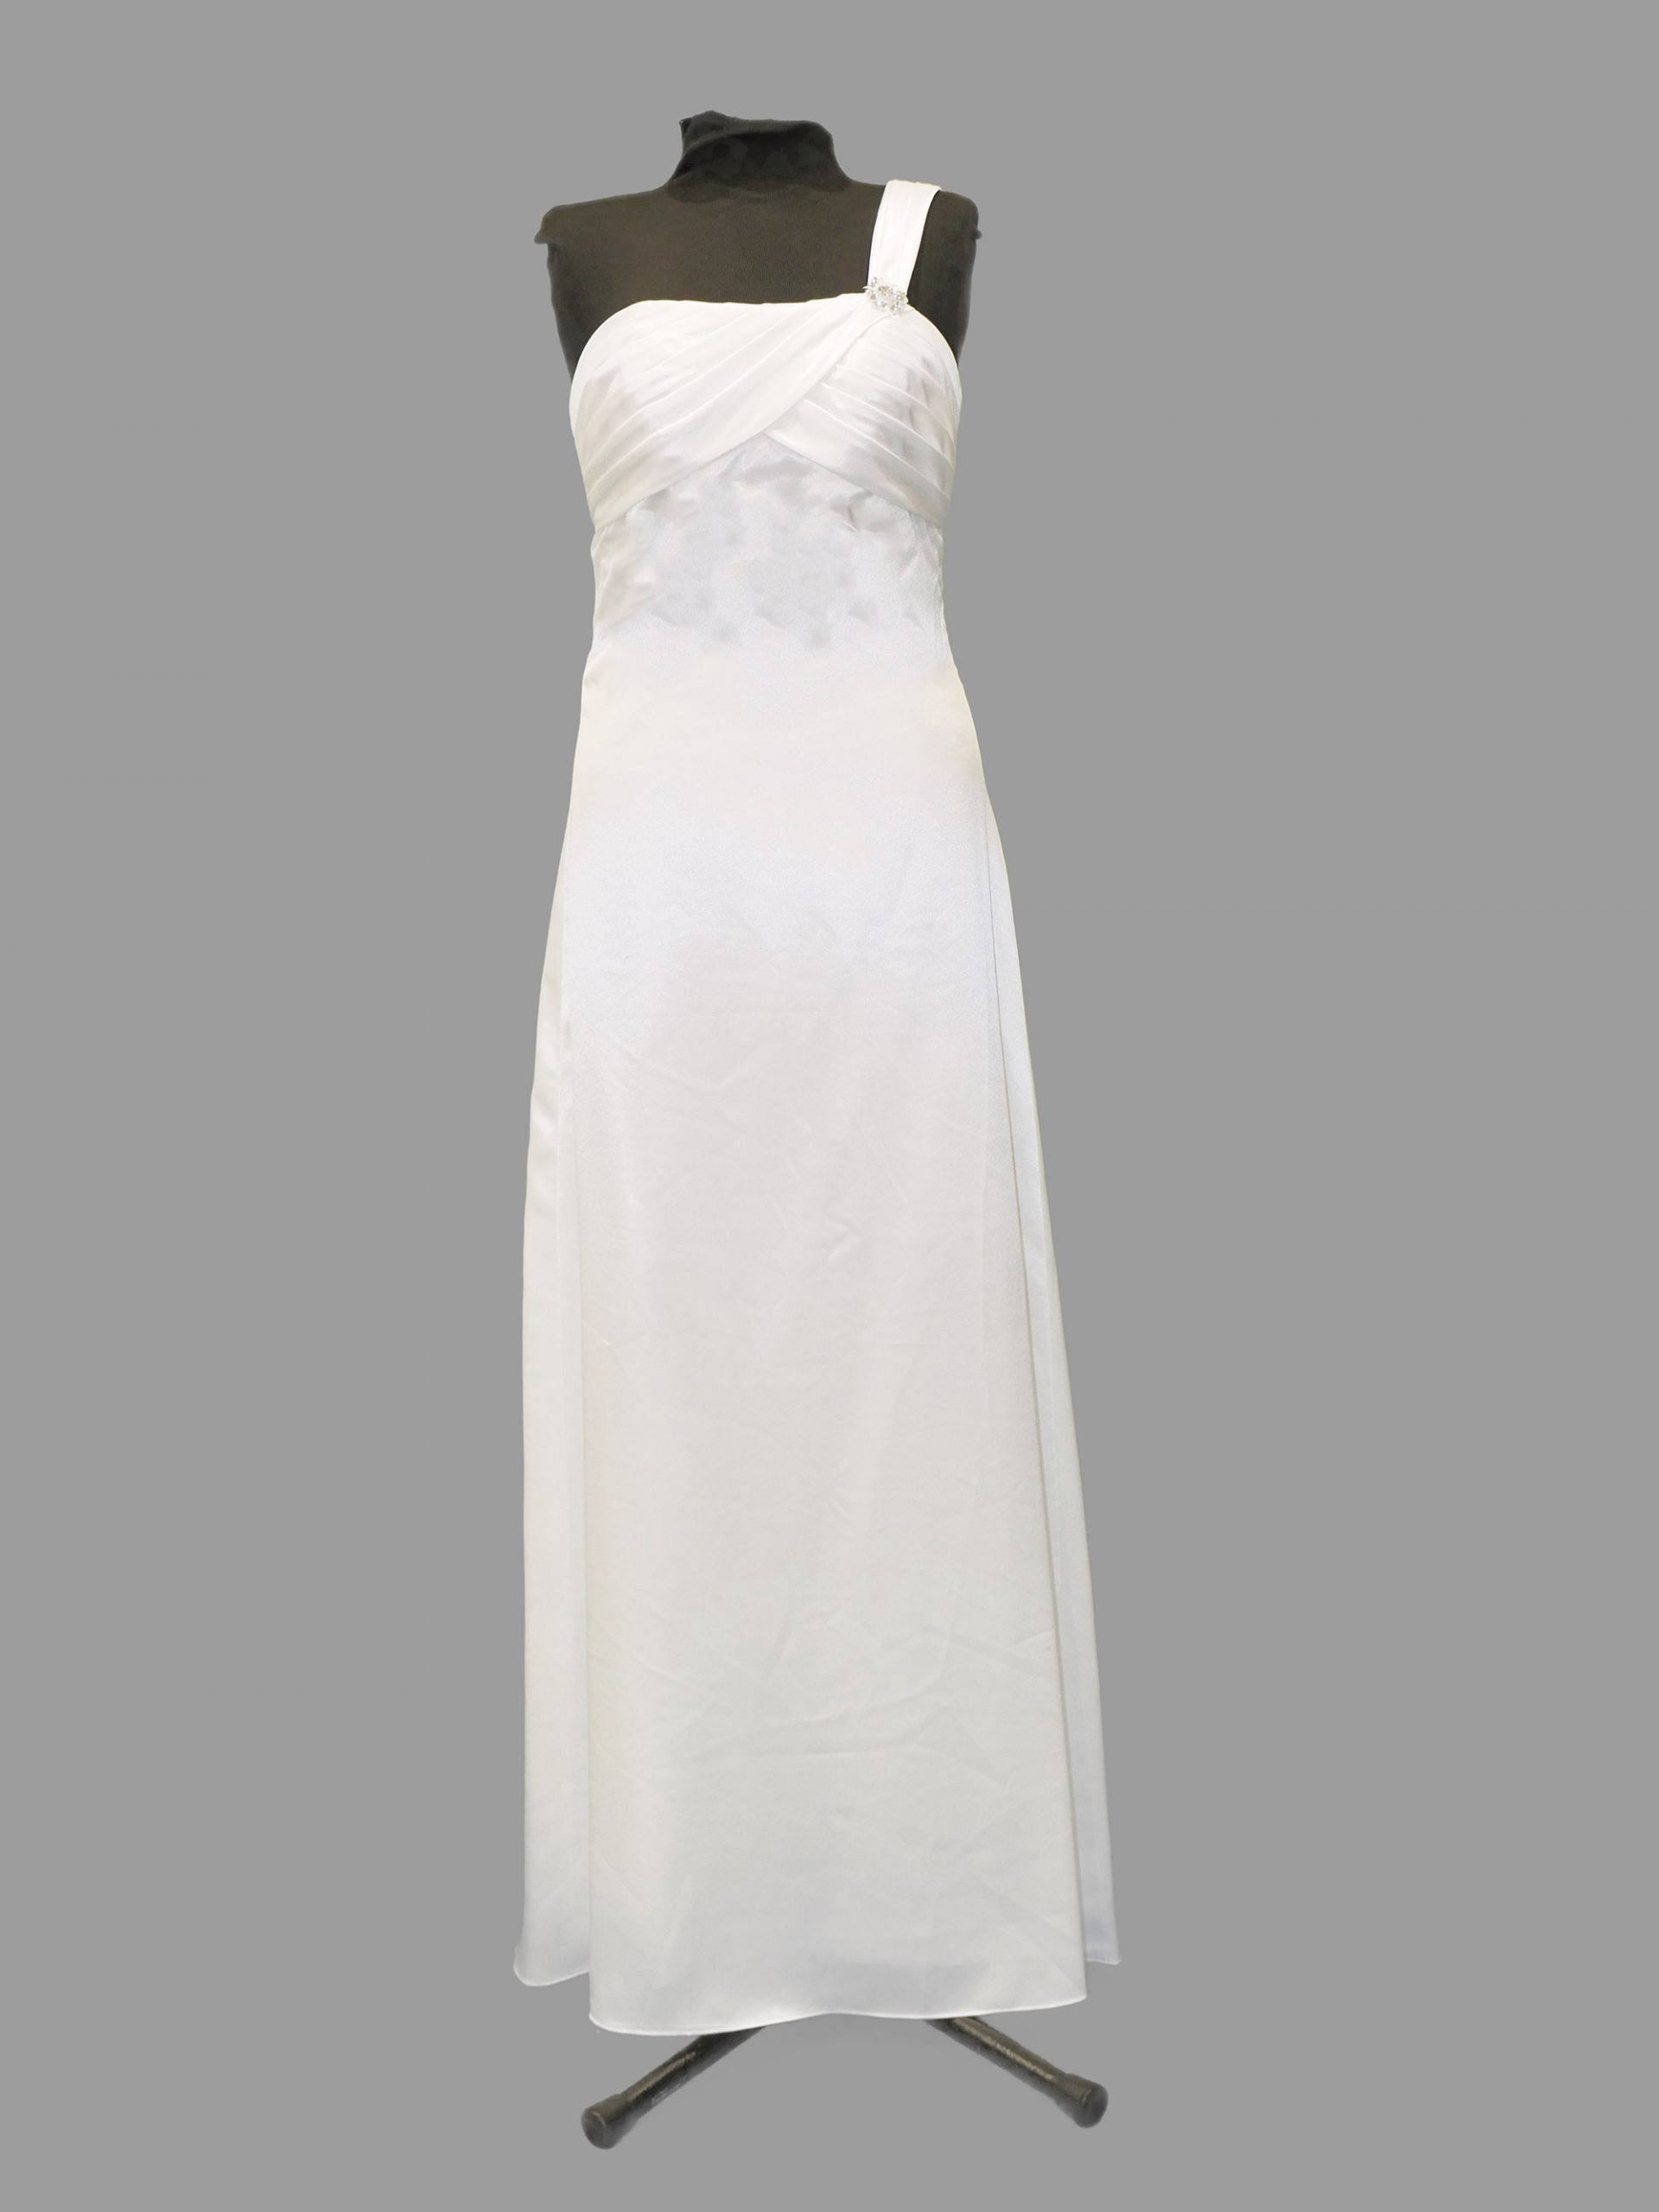 Simple Bridal/Debutante gown, Valencia Jodie, white satin, size 8